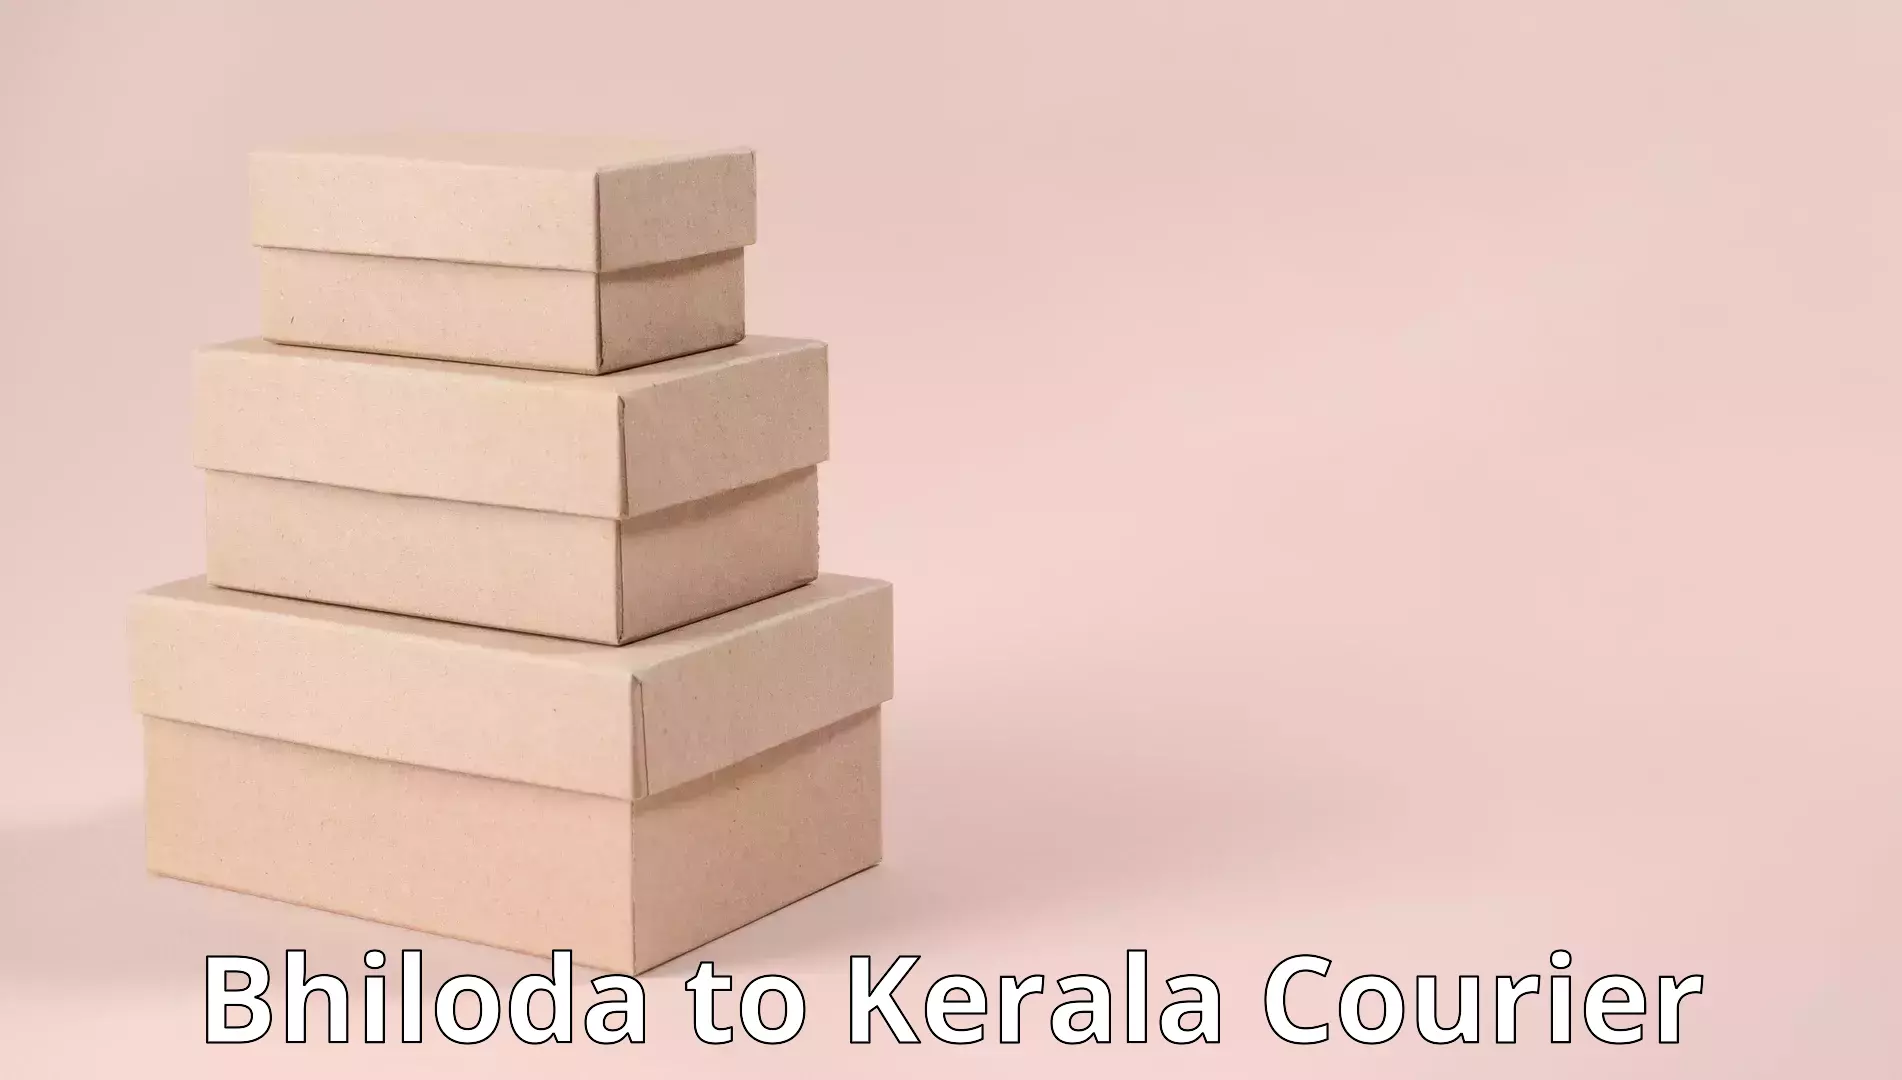 Professional moving strategies Bhiloda to Nedumkandam